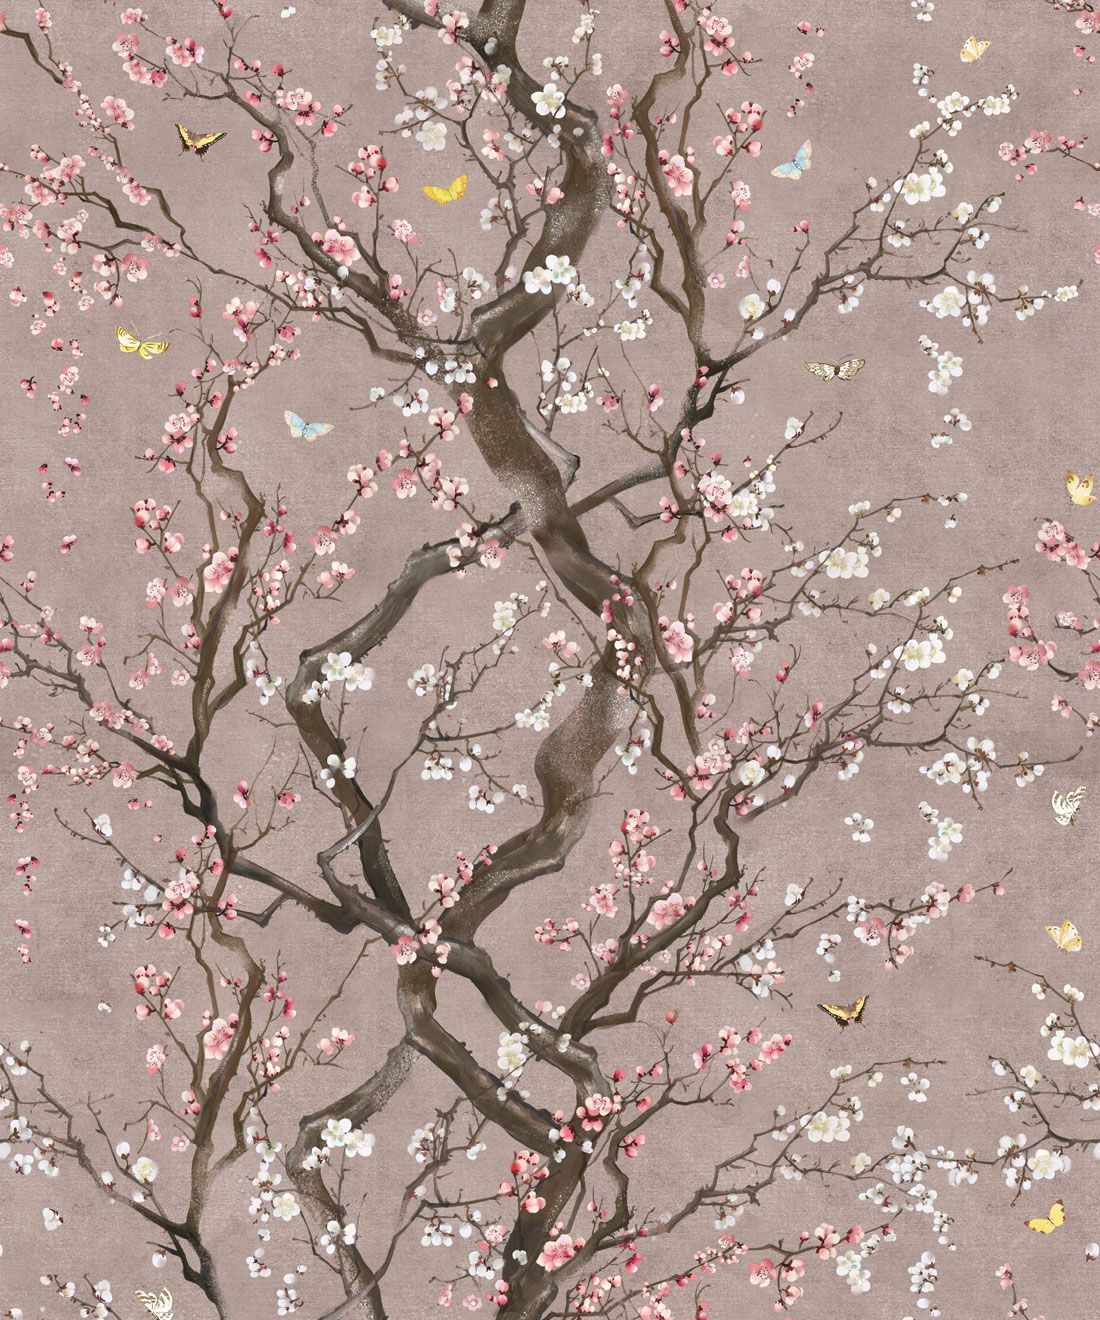 Plum Blossom , HD Wallpaper & Backgrounds